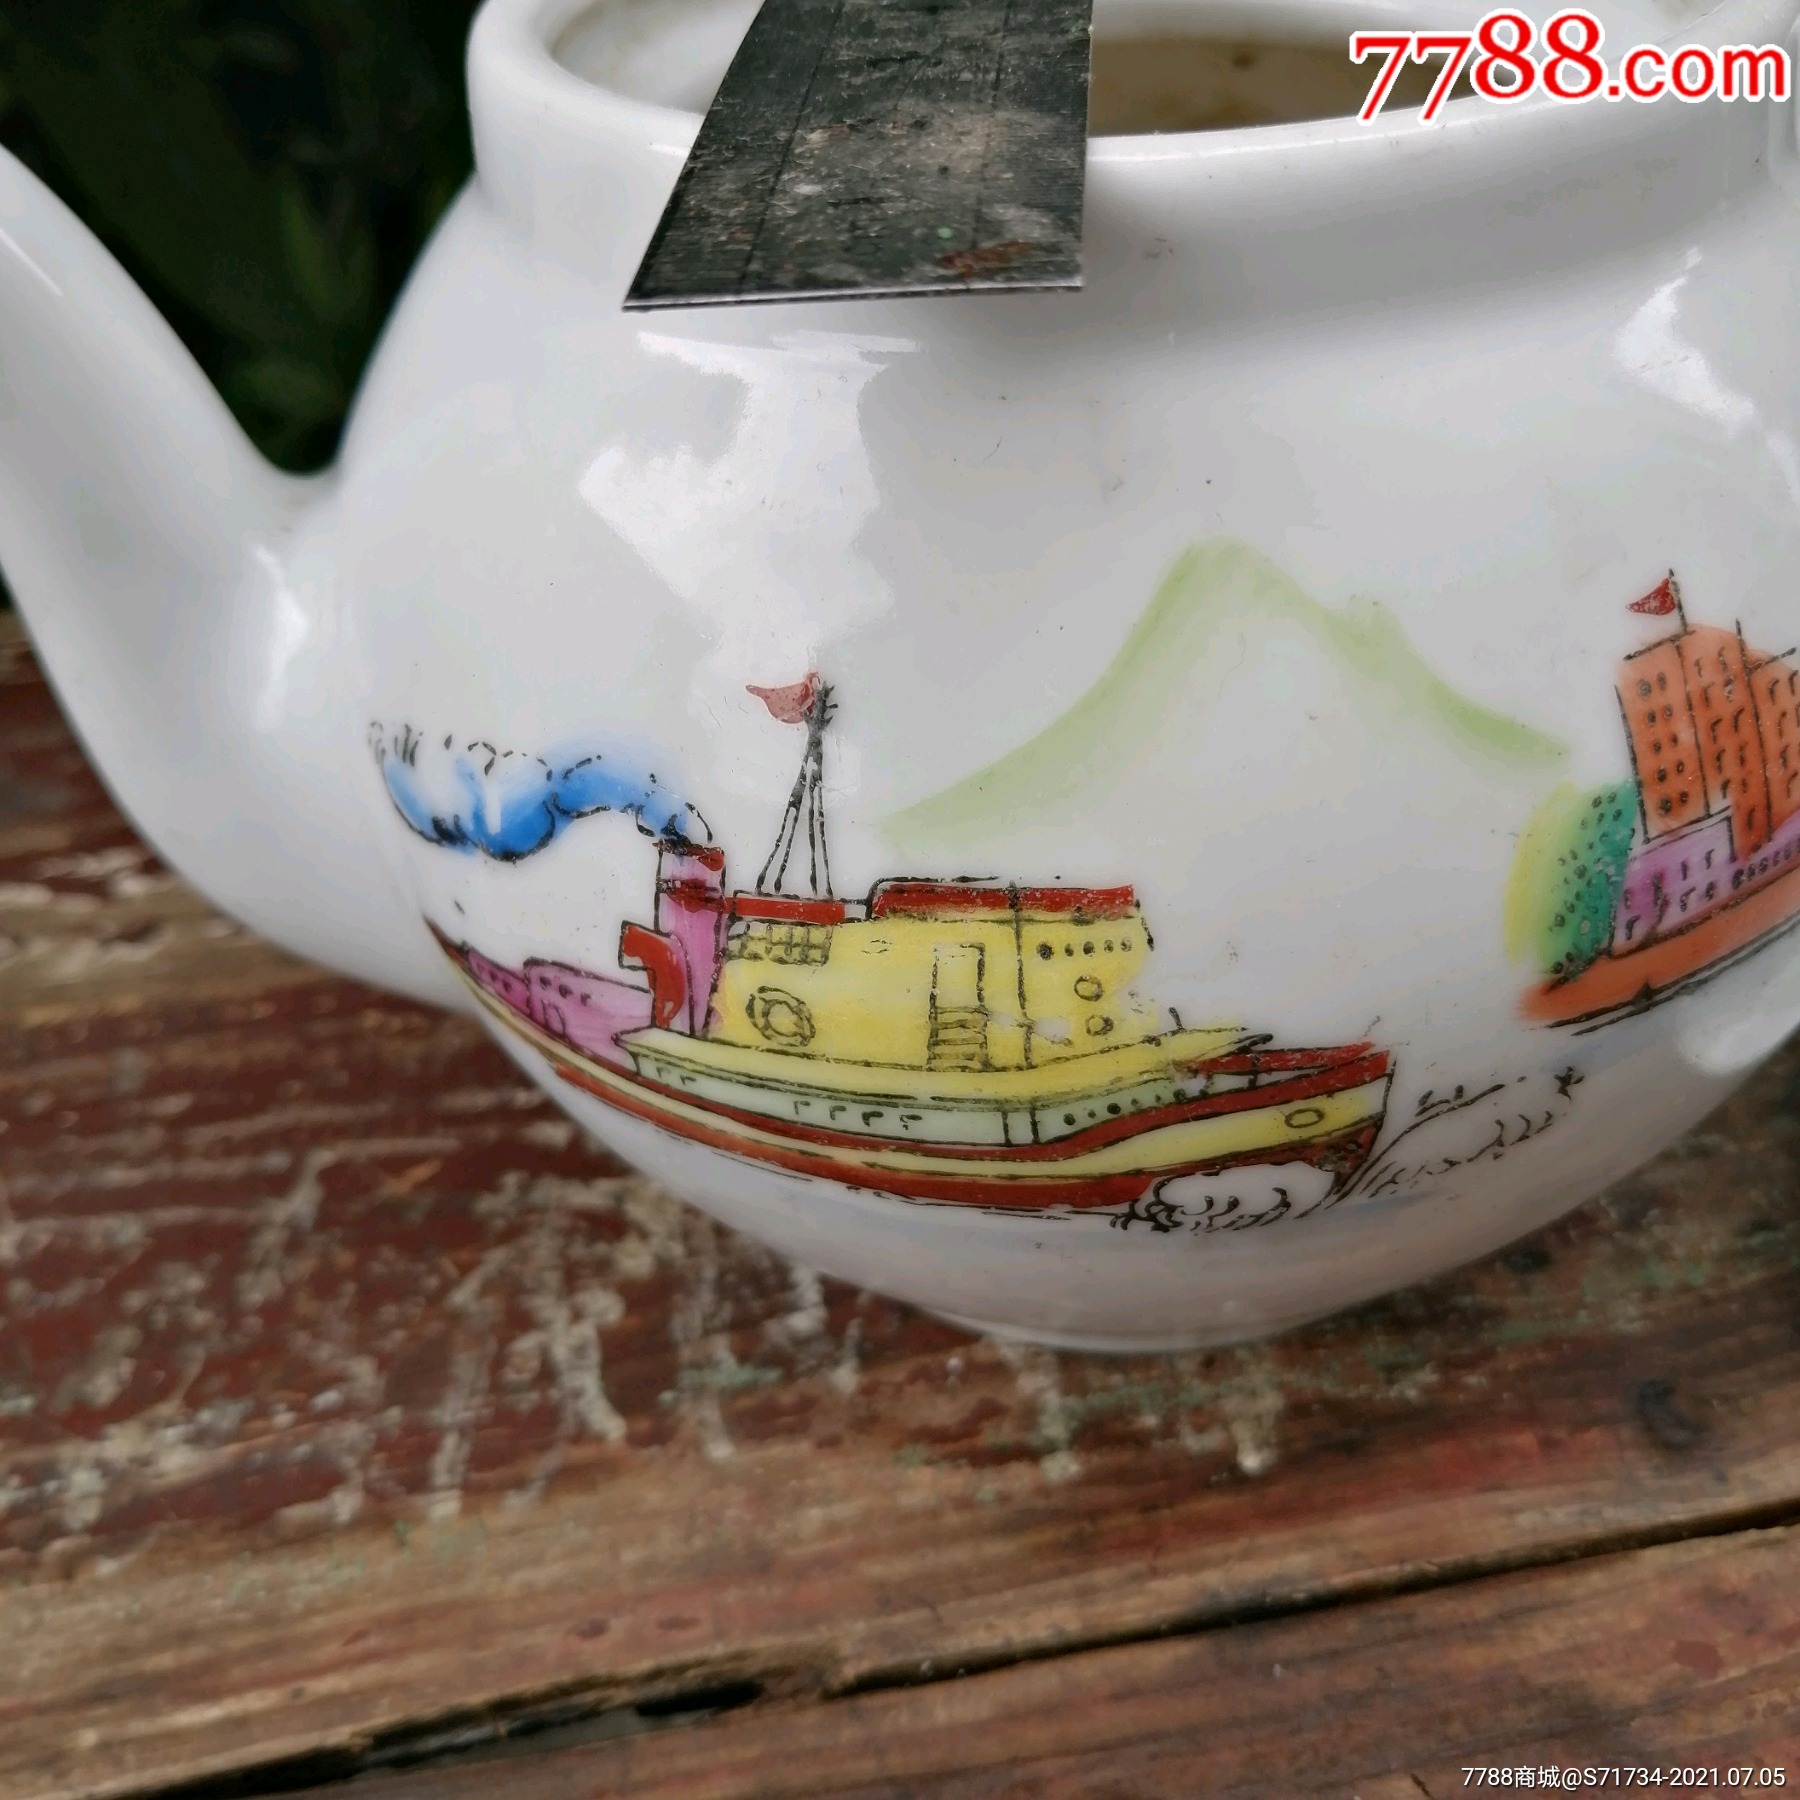 "文革红色官窑"1976年湖南醴陵星火瓷厂出品的"山水工厂航船"瓷茶壶